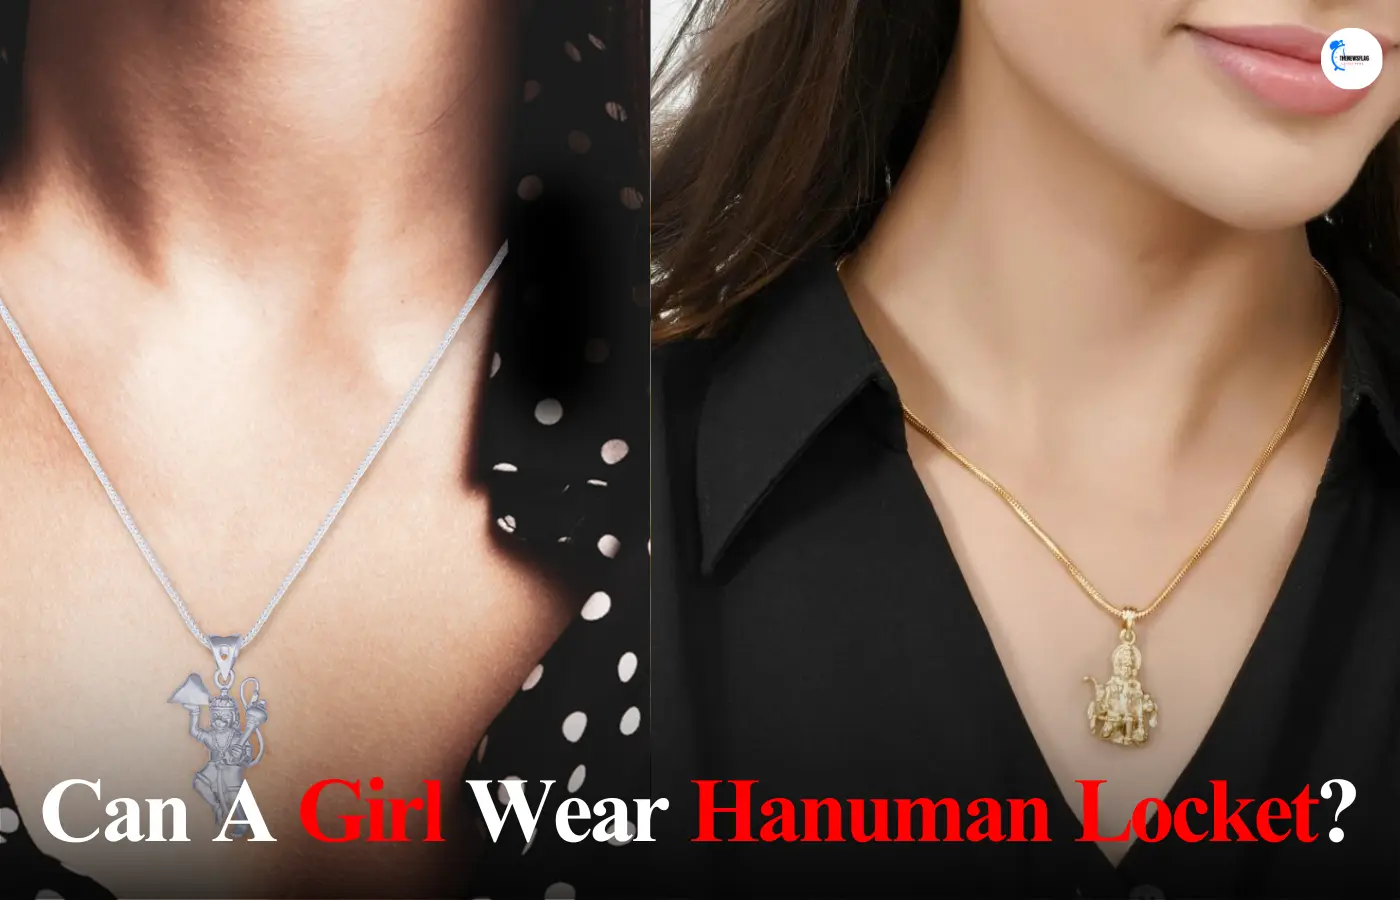 Can girls wear hanumanji locket?